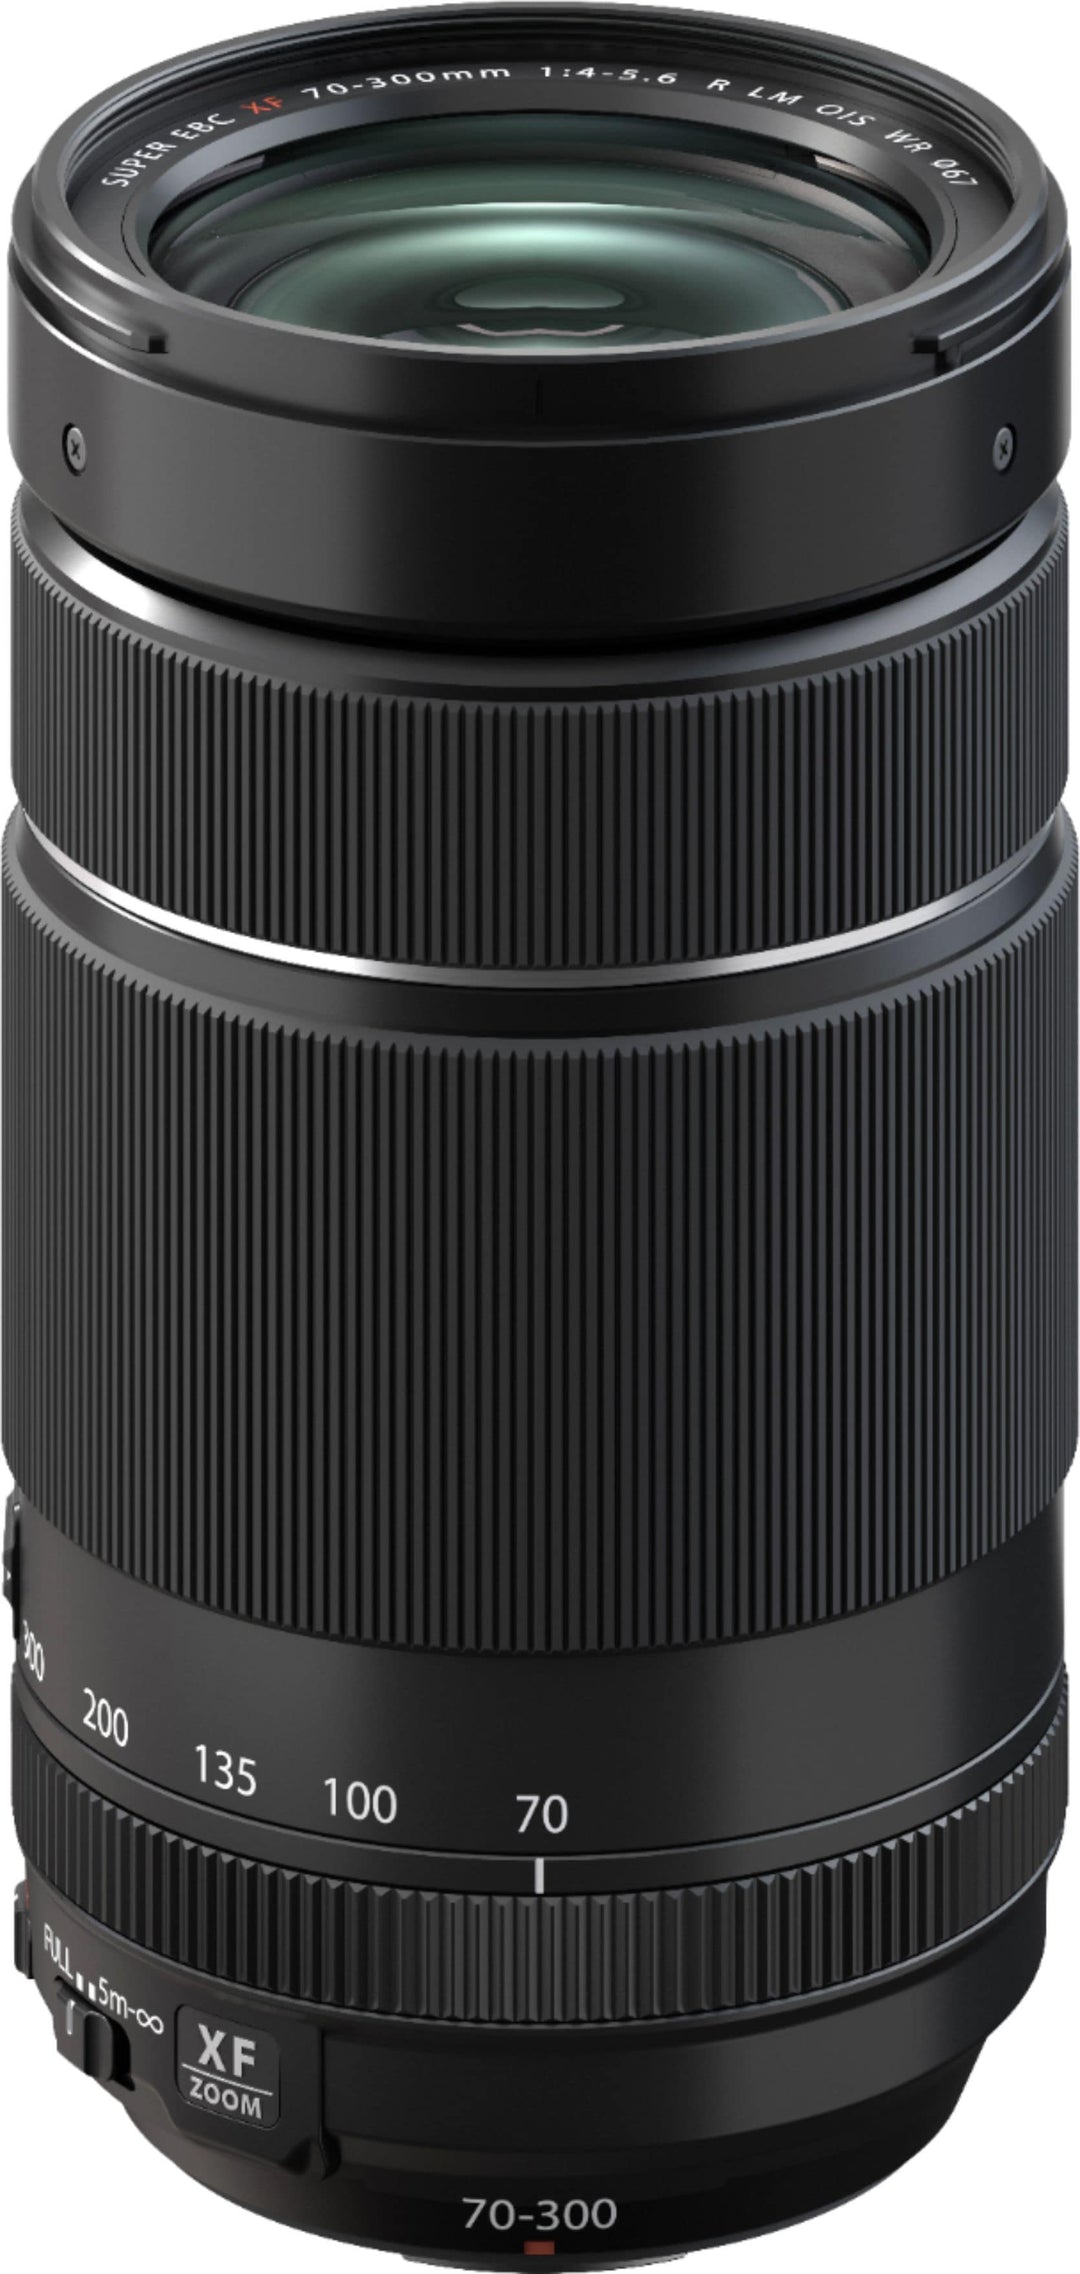 Fujifilm - XF70-300mmF4-5.6 R LM OIS WR Lens - Black_0